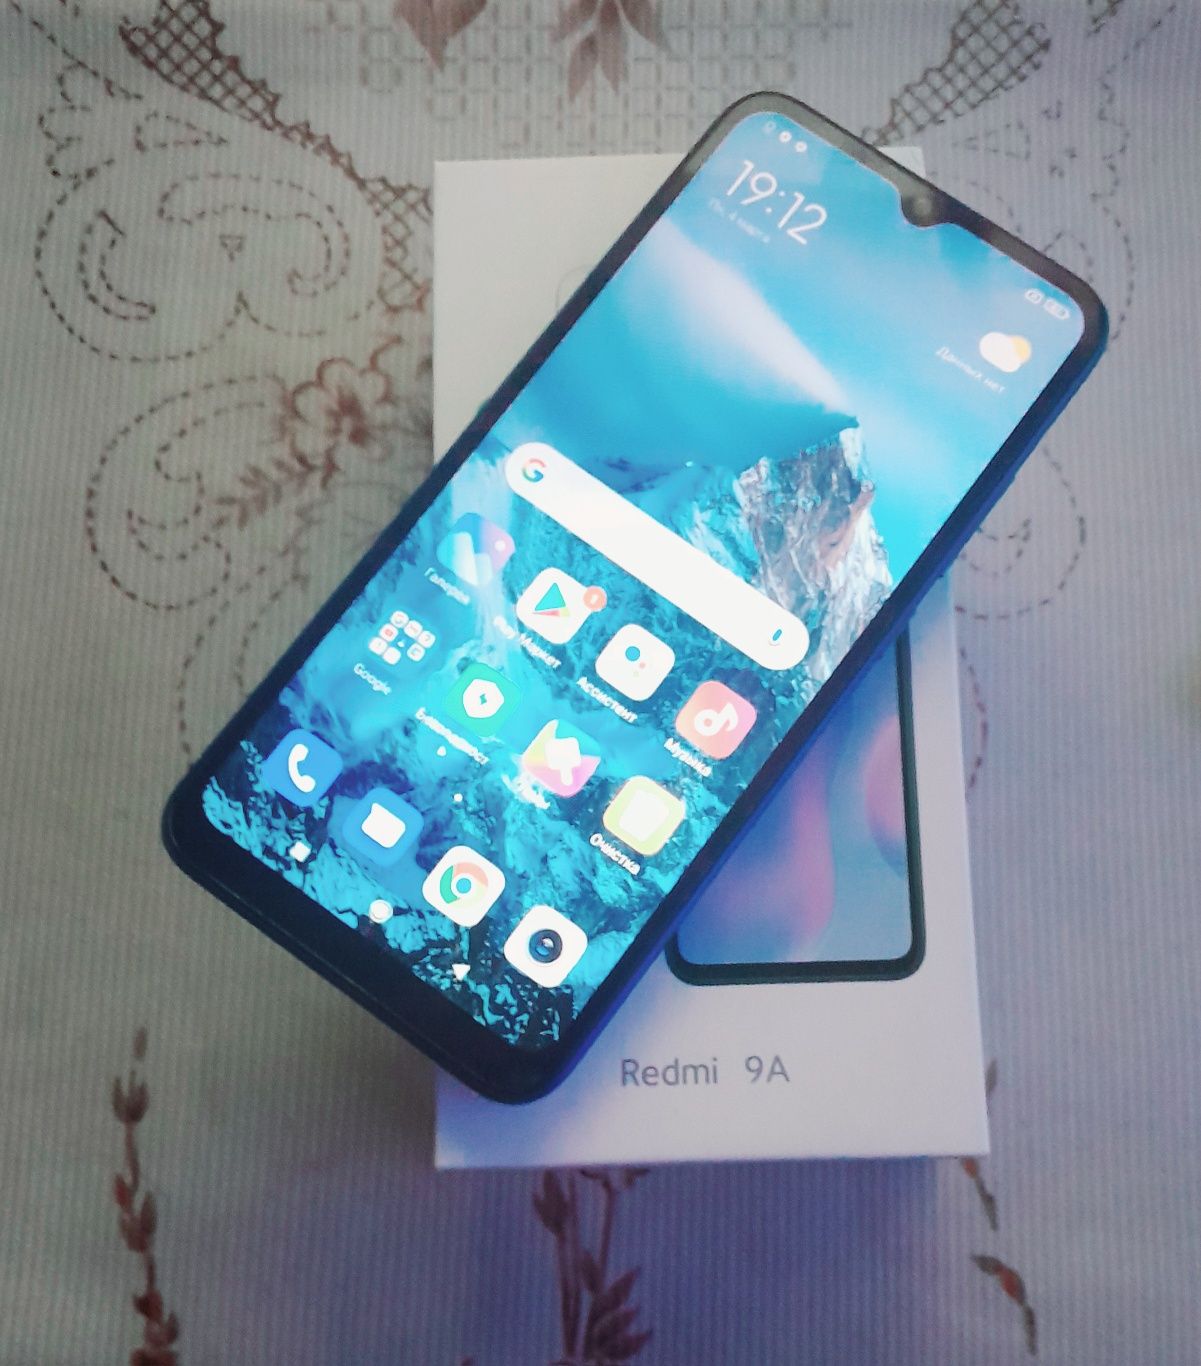 Xiaomi Redmi 9a 2022г